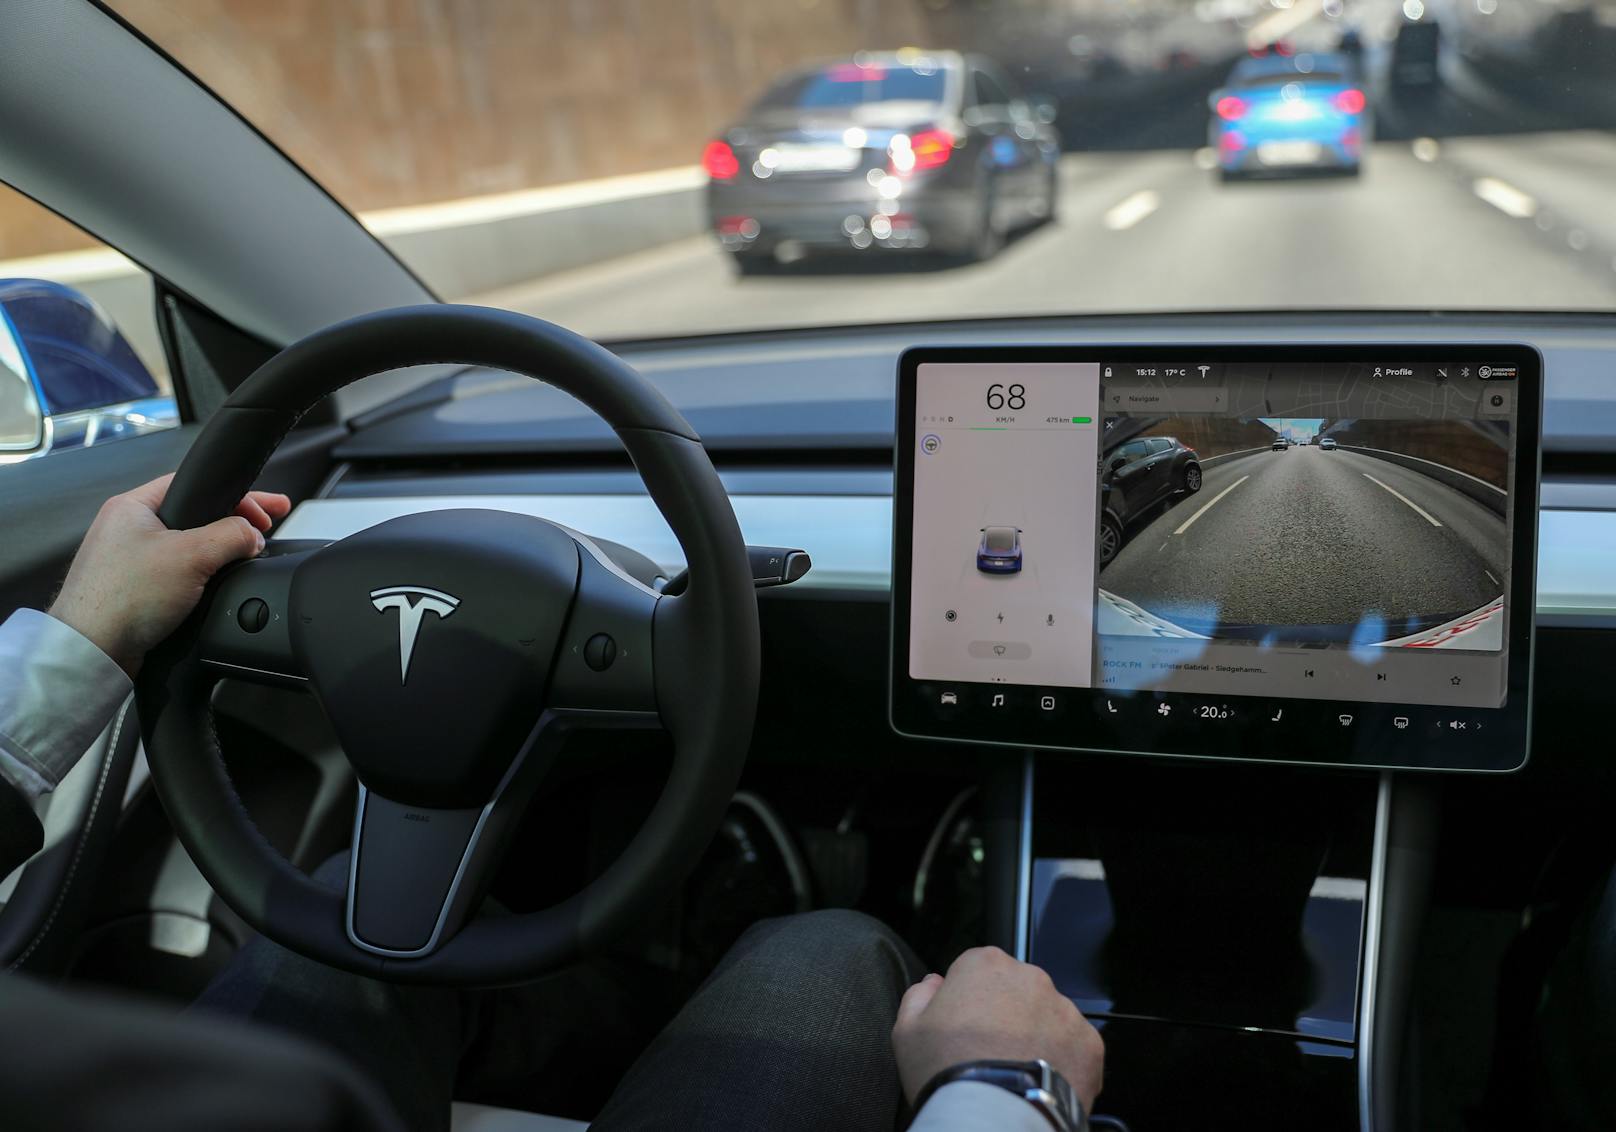 So sieht ein Tesla von innen aus. Viele der bekannten Hebel und Knöpfe fehlen, dafür ist ein großer Touchscreen installiert.